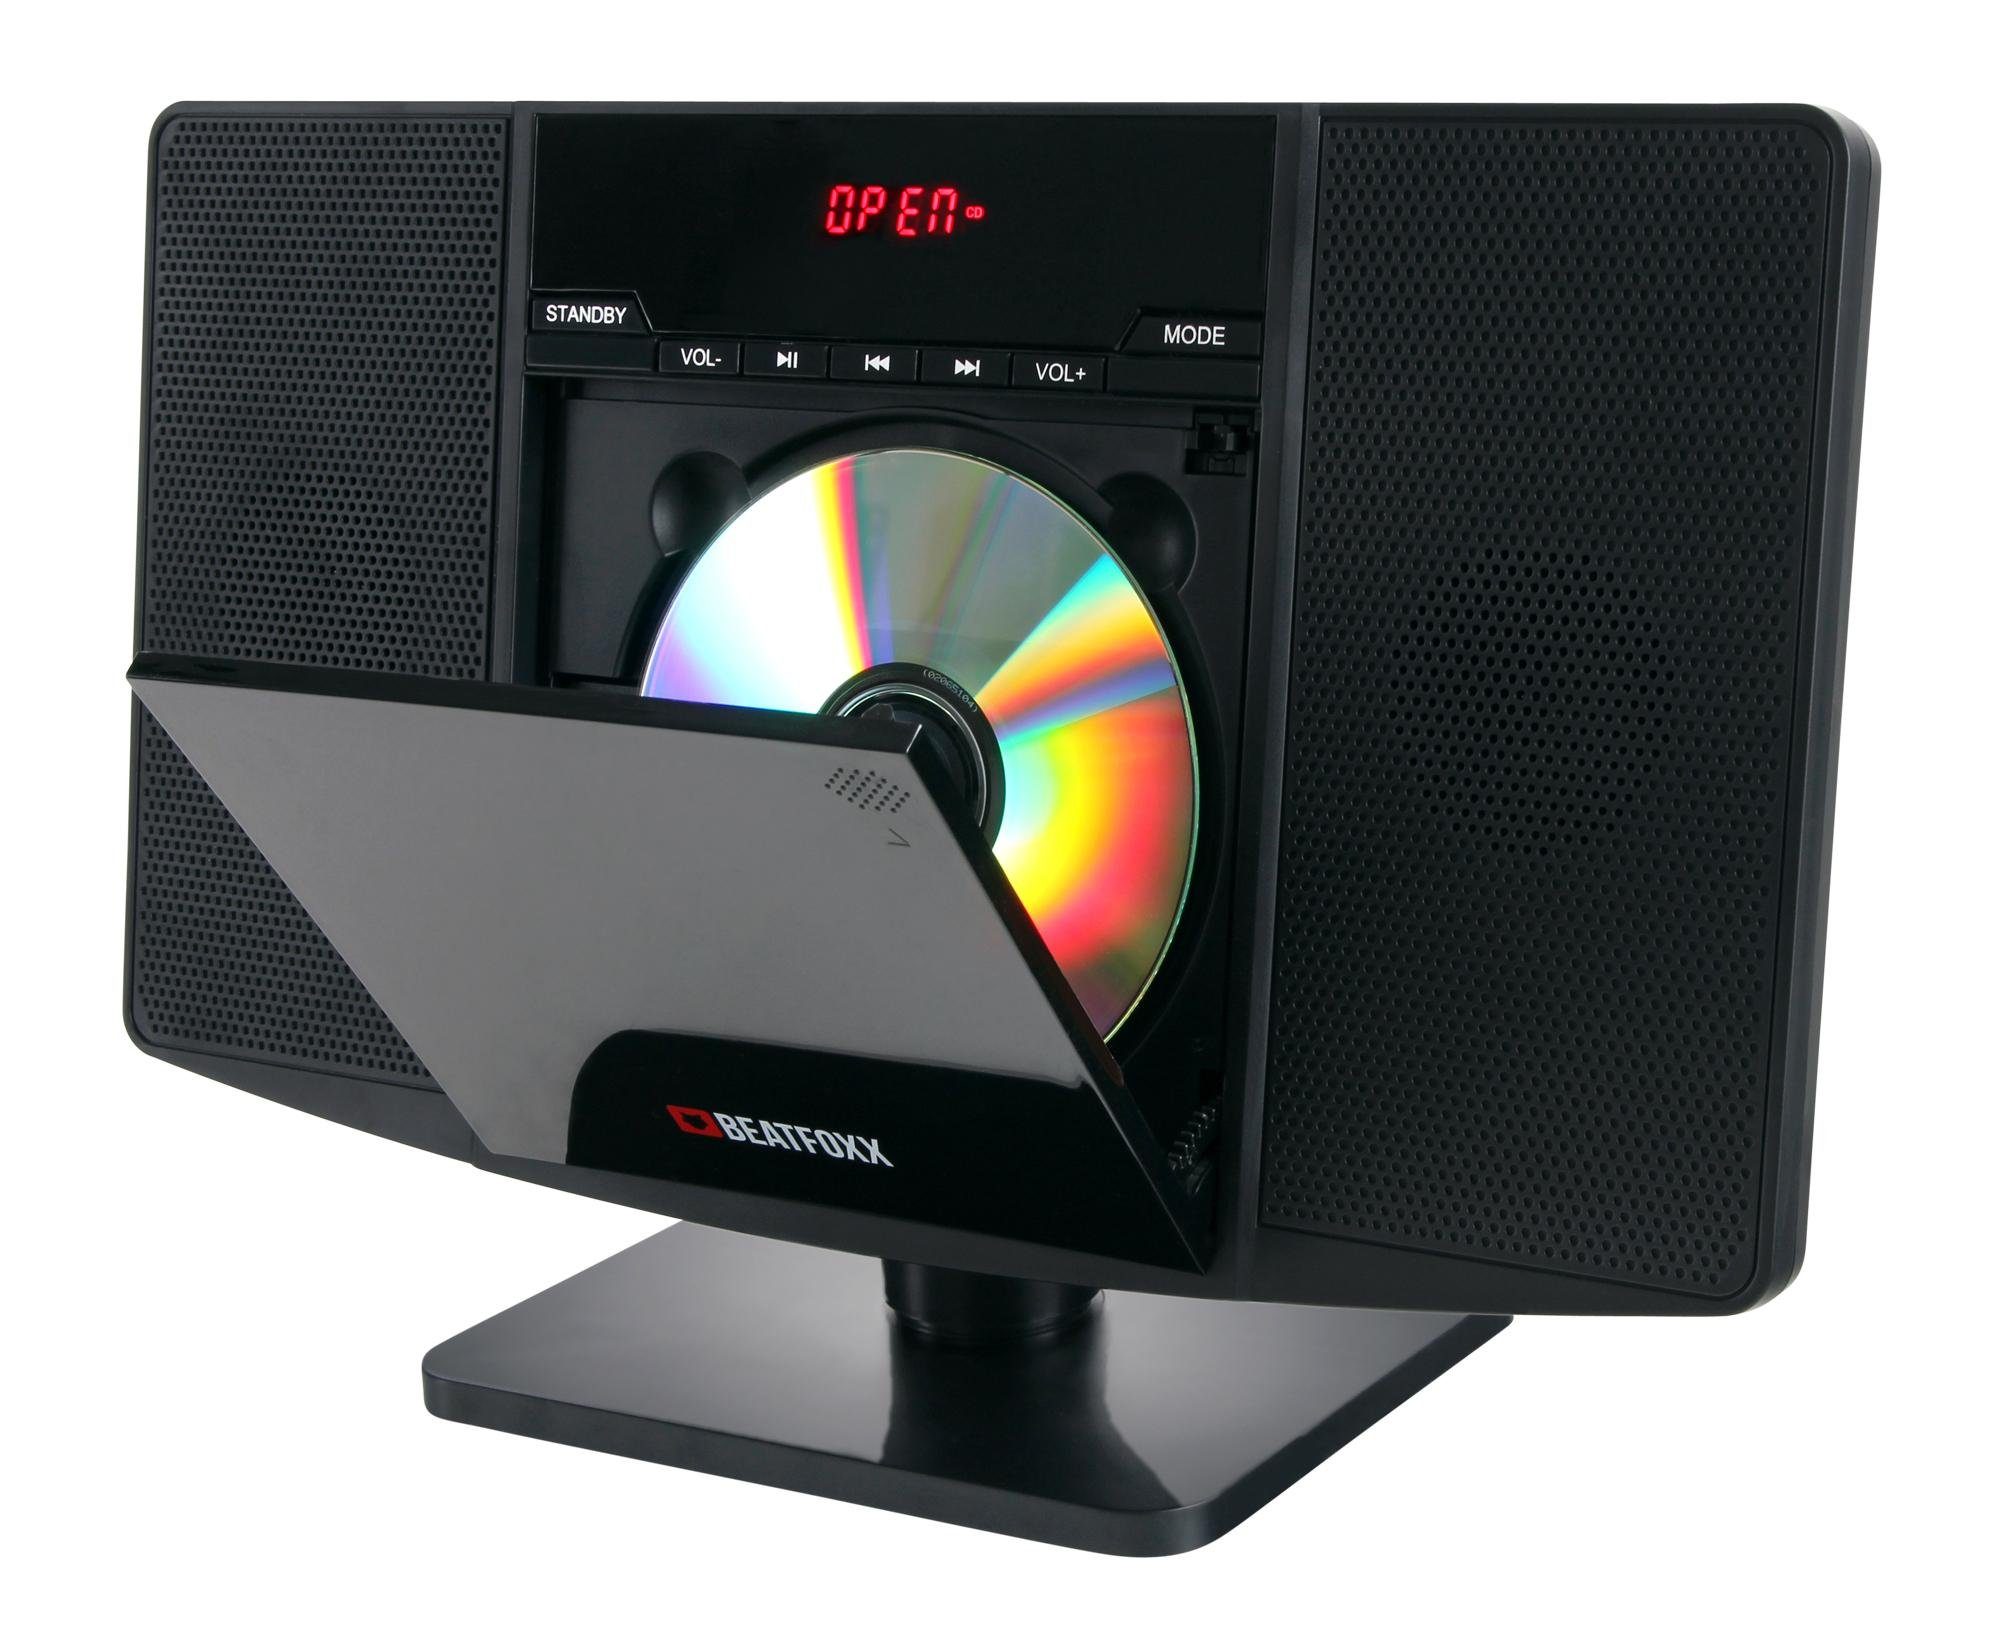 Beatfoxx »MCD-60 Vertikal Stereoanlage (CD/MP3-Player, USB, Bluetooth, Aux  In, Stand- oder Wandmontage, inkl. Fernbedienung)« Stereoanlage  (UKW/MW-Radio, 6,00 W) online kaufen | OTTO